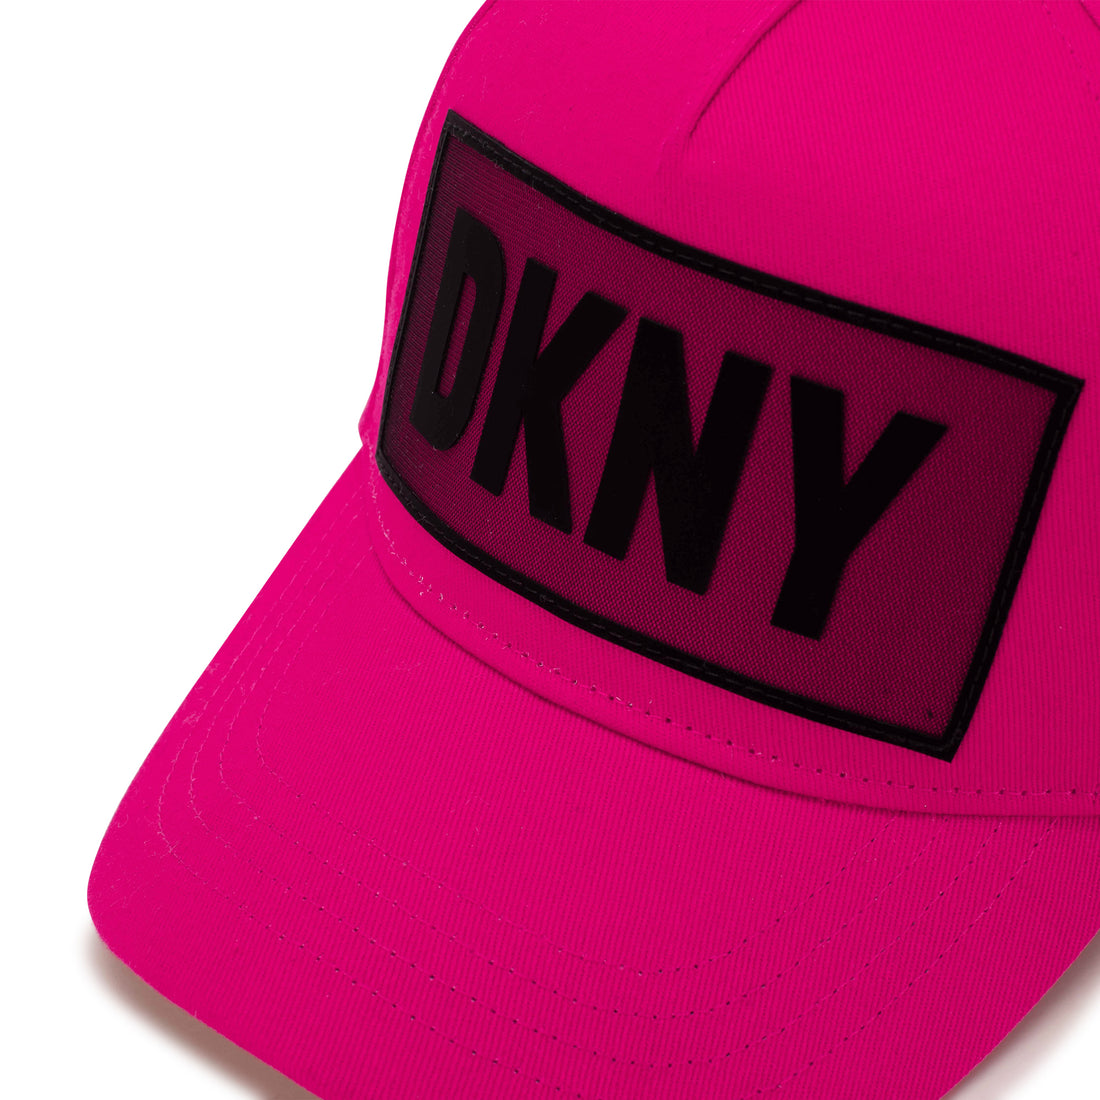 Dkny Cap Style: D31297